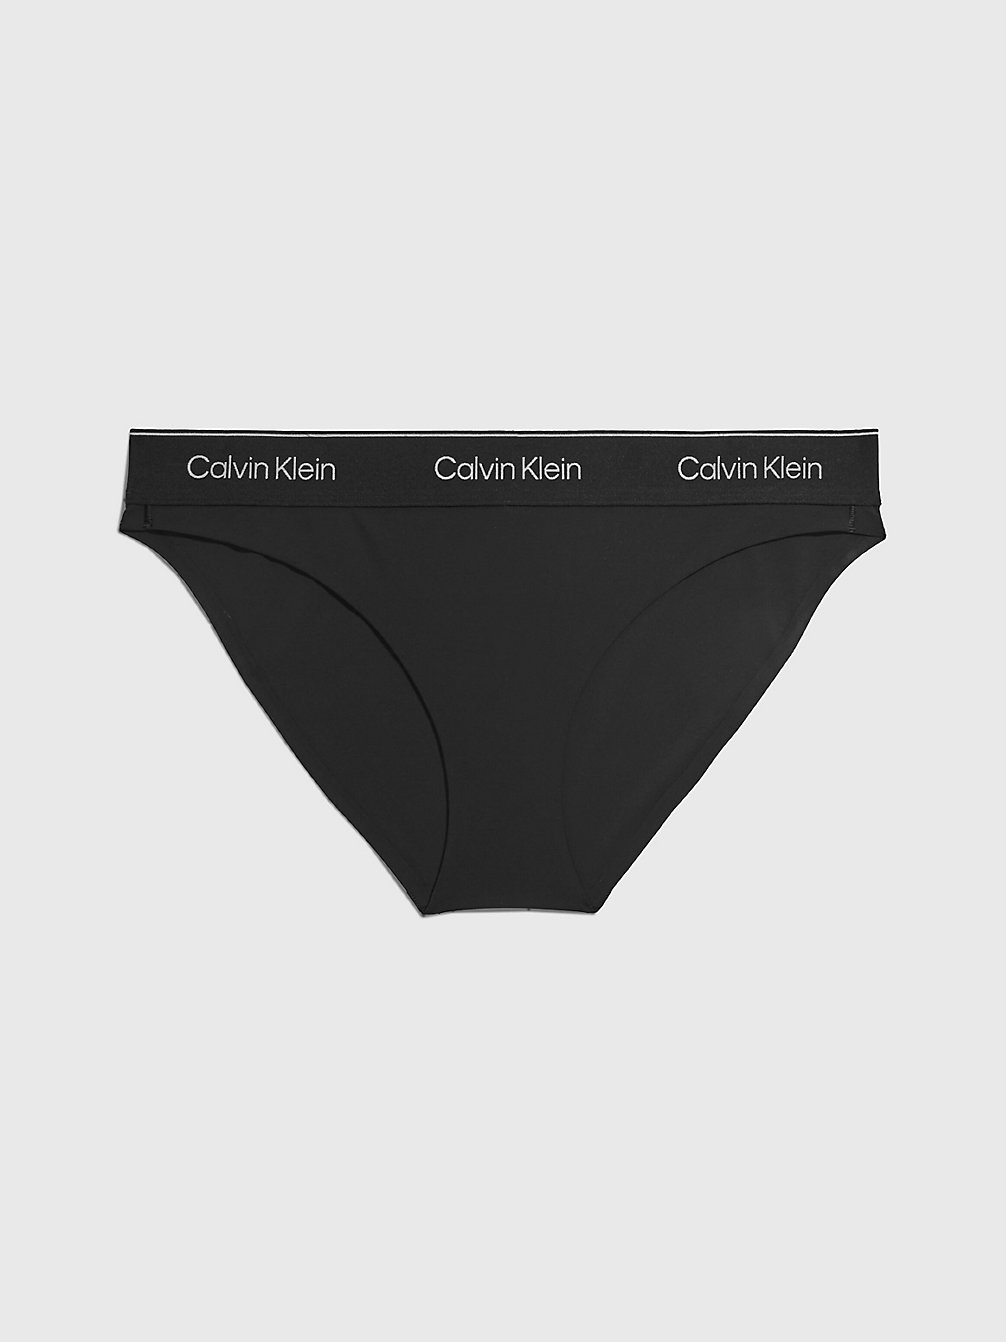 Women's Sporty Underwear Sets | Calvin Klein®